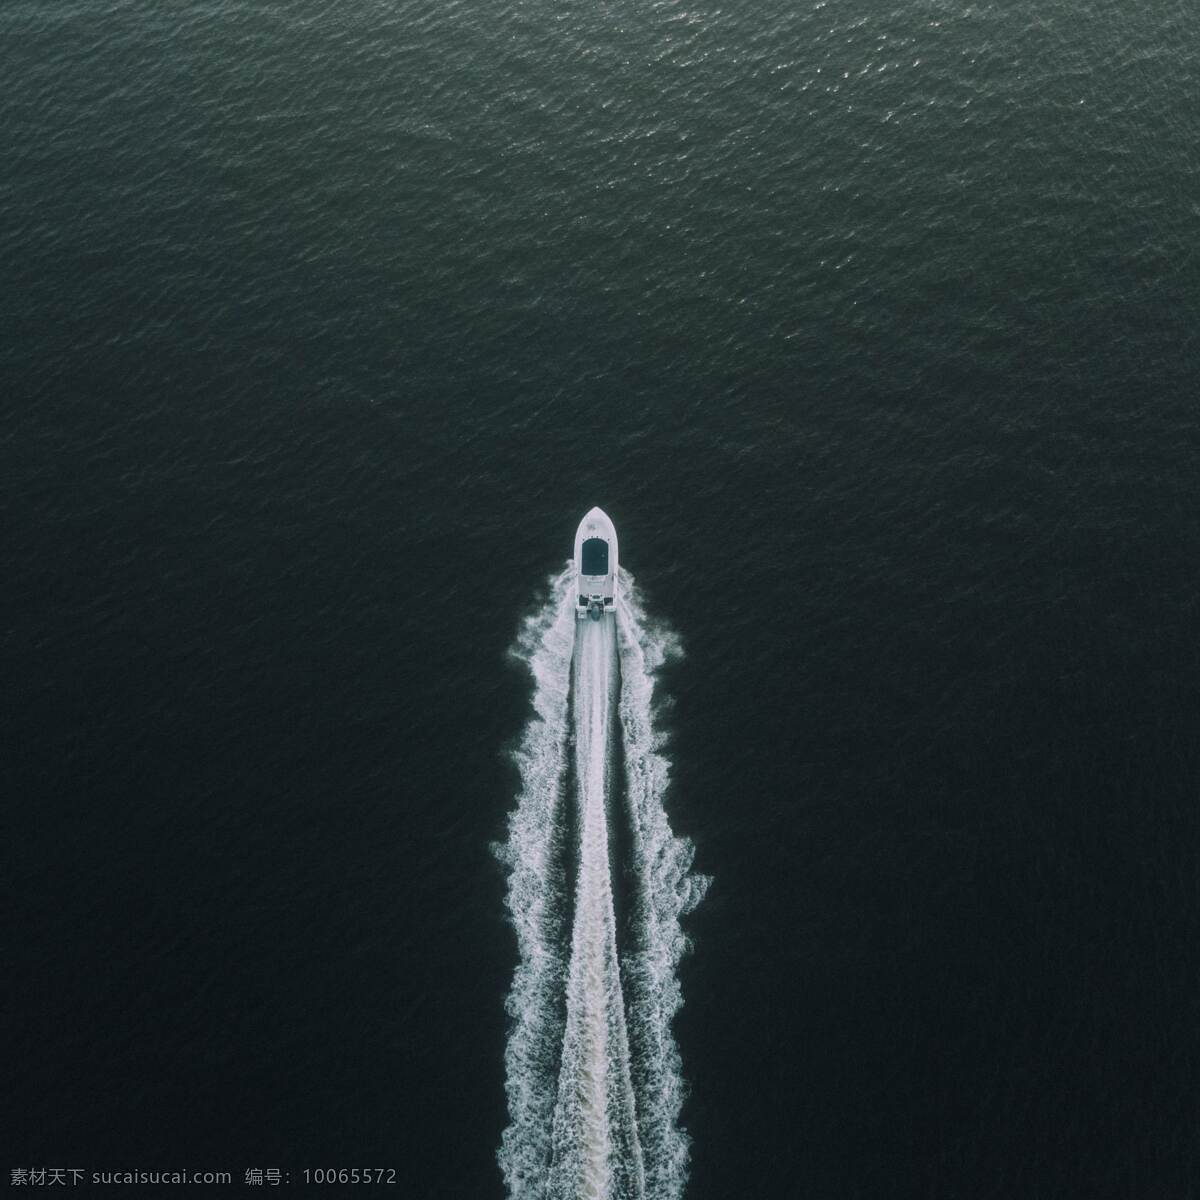 海面的游艇 海面 游艇 船舰 水纹 大海 旅游摄影 国外旅游